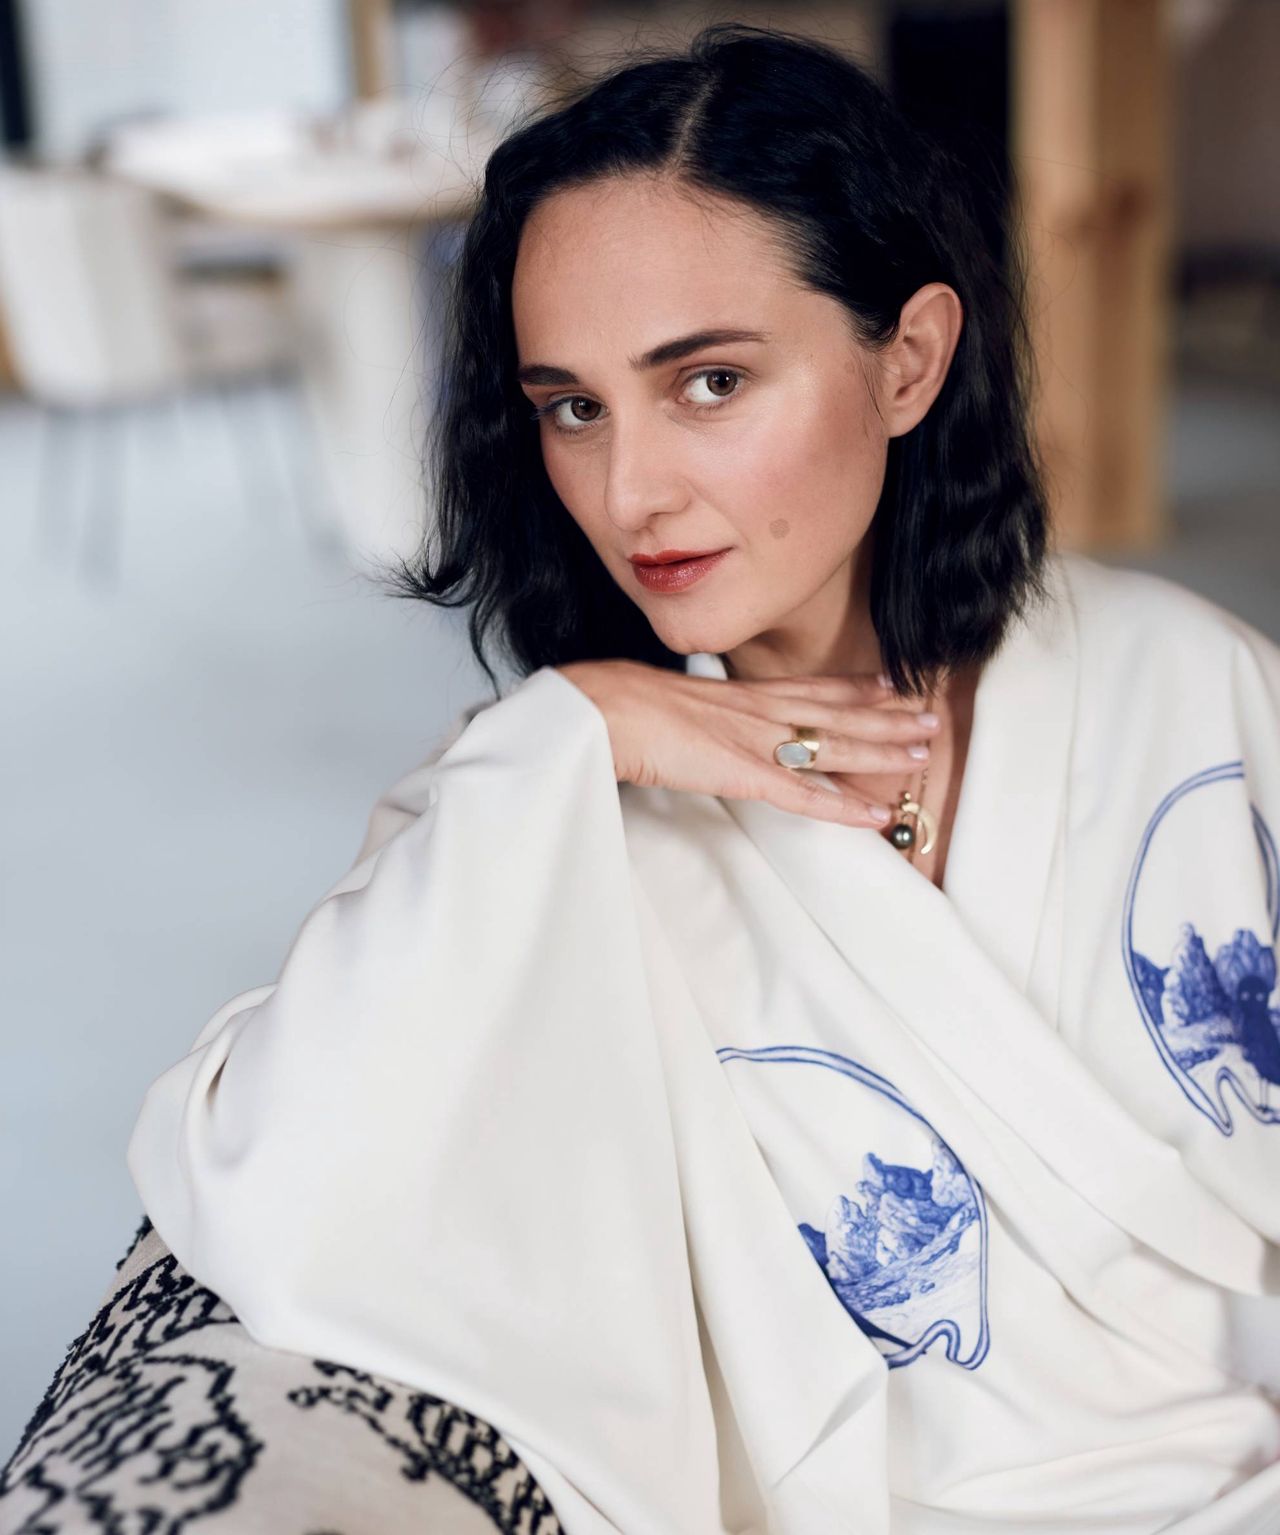 Joanna Hawrot interesuje się współczesną interpretacją japońskich kimon